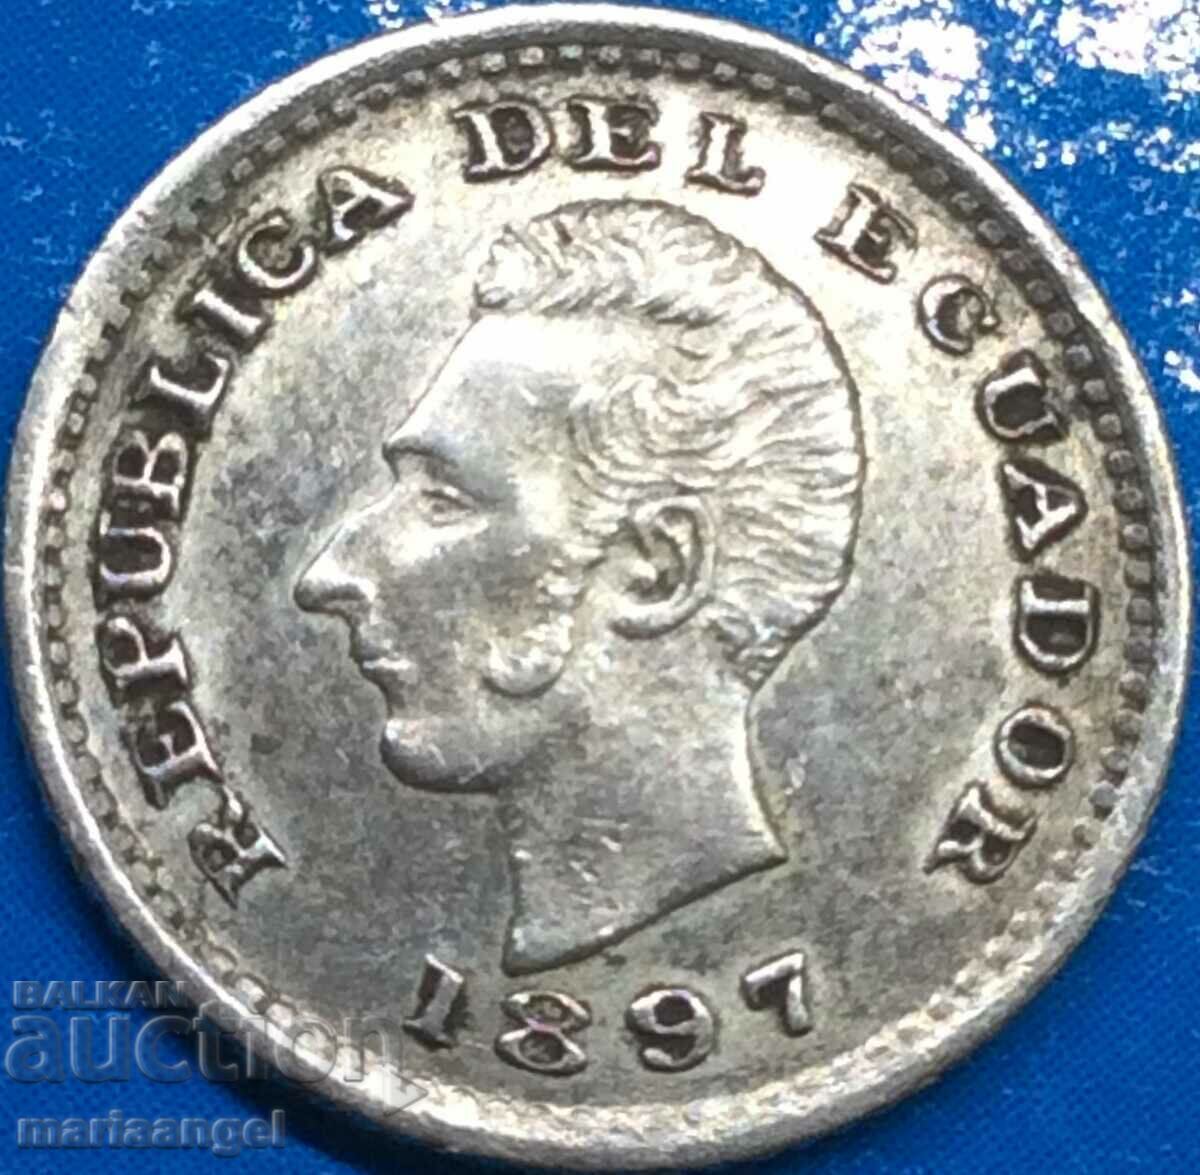 Ecuador Sucre Ecuador 1/2 decim de sucre 1897 silver